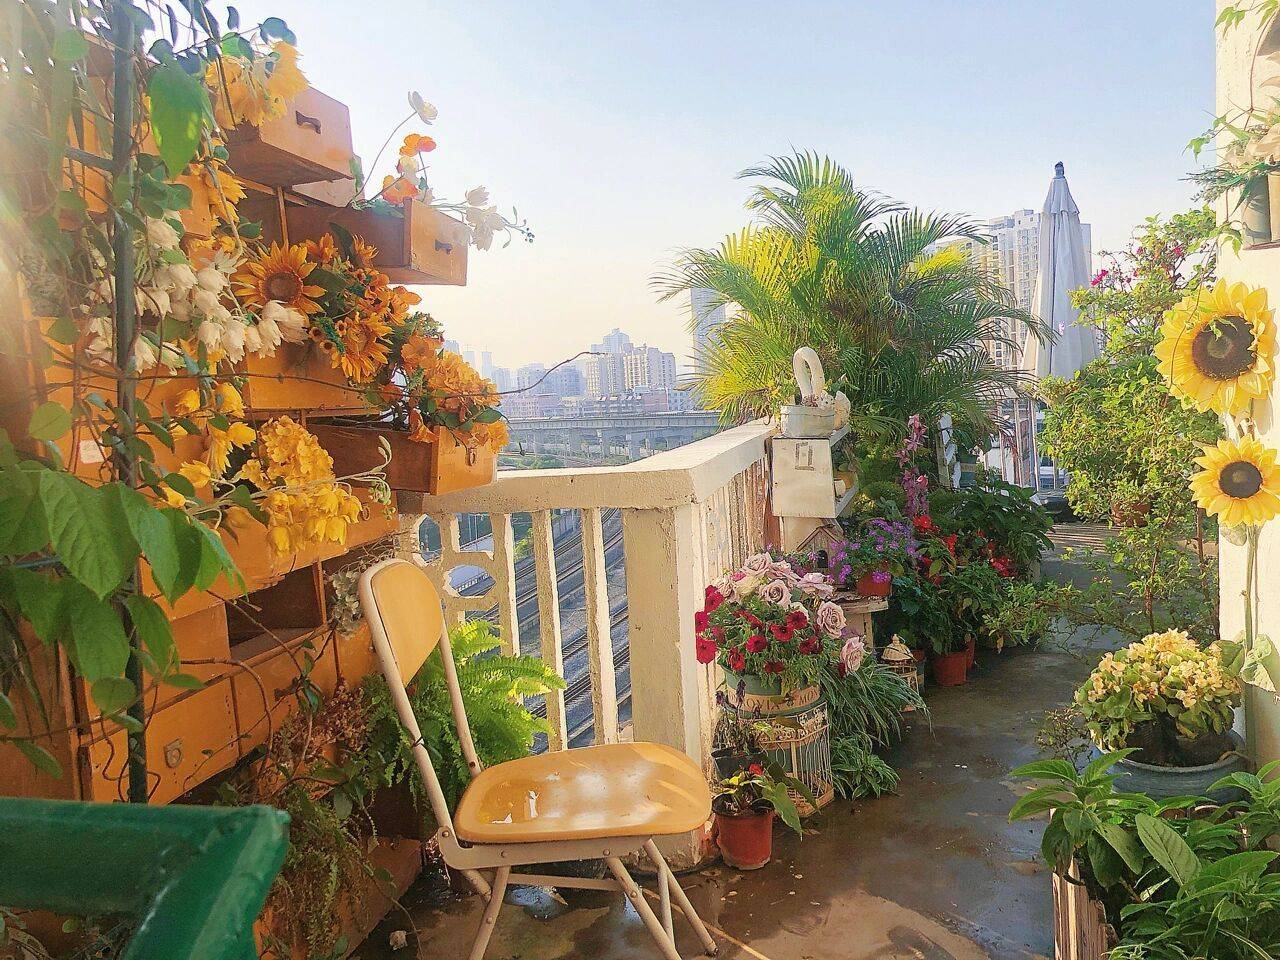 Đam mê với việc trồng hoa, cô gái 27 tuổi thuê nhà trên sân thượng để tạo ra khu vườn đẹp như tranh vẽ